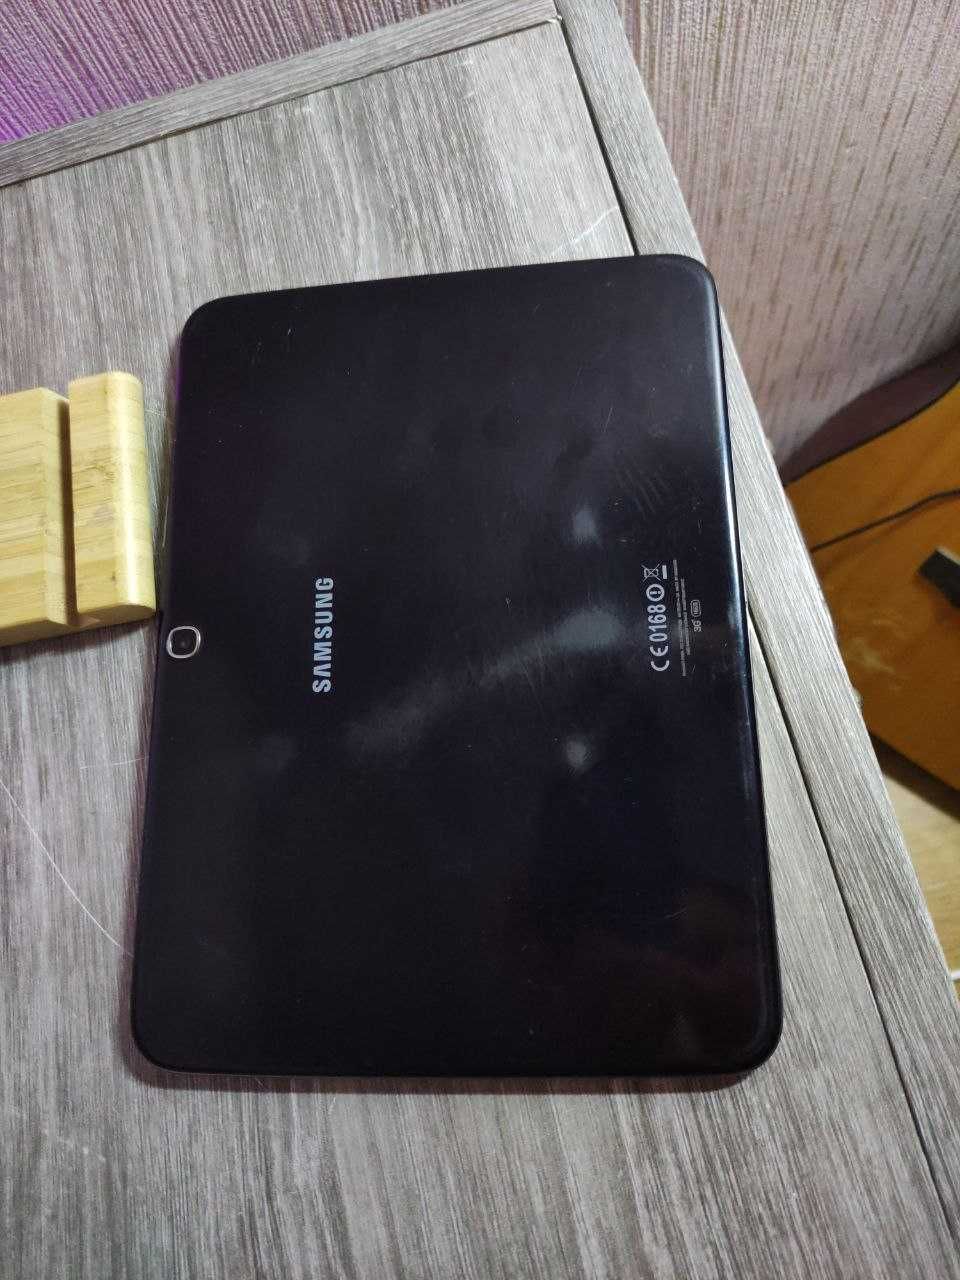 Планшет Samsung Galaxy Tab 3 P5200 \ 2 ядра \ 16 gb працює Ютуб.